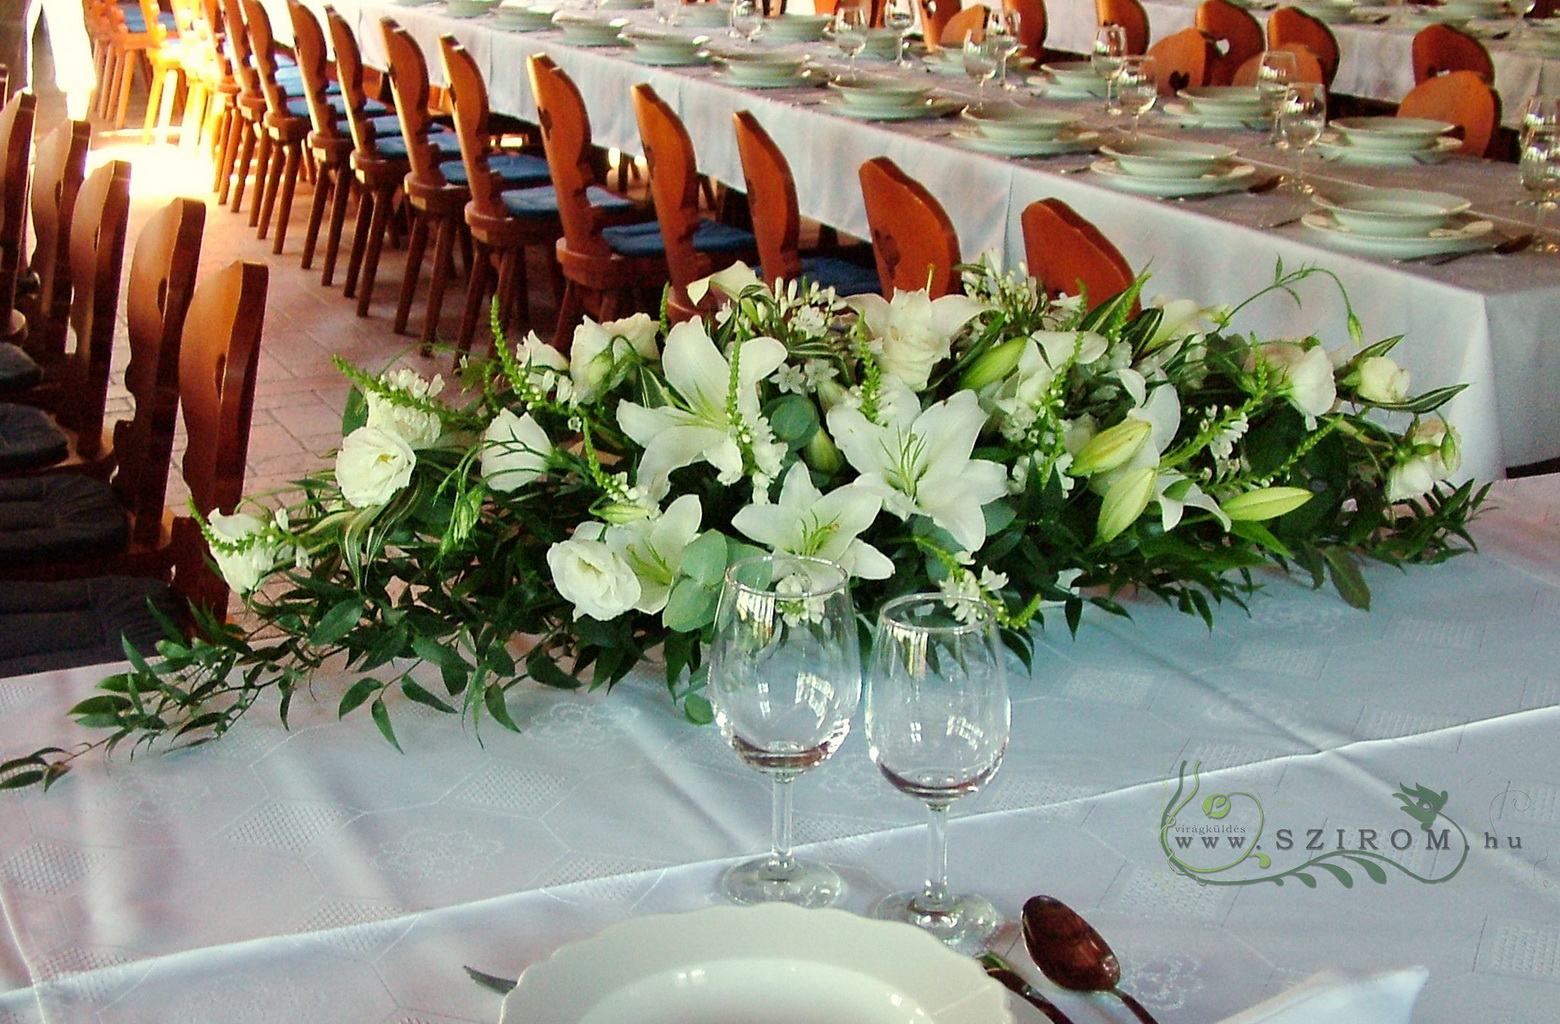 Főasztaldísz (fehér liliom, gyertya virág, agapanthus), Domonyvölgy, esküvő